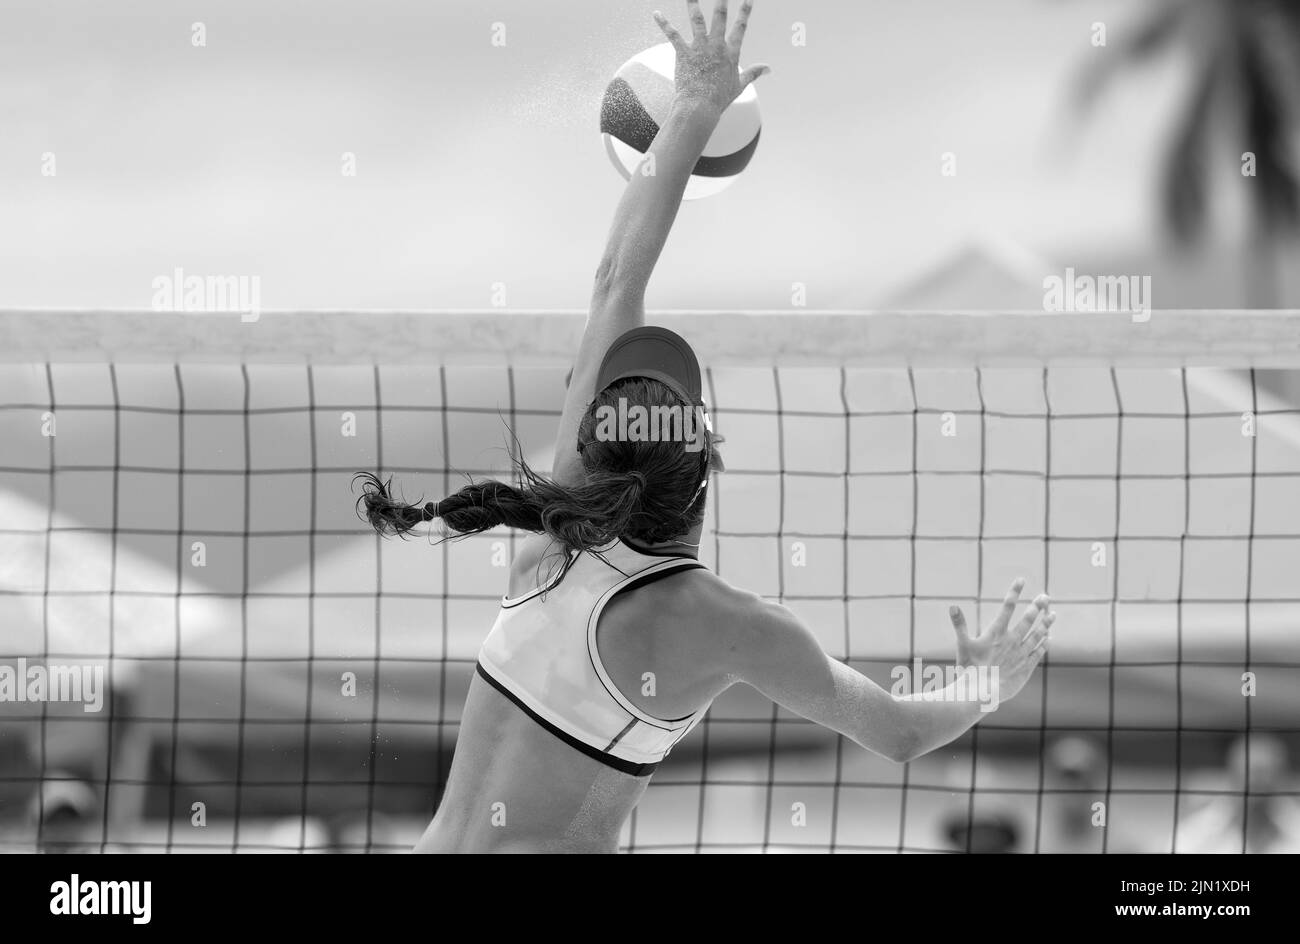 Un jugador de voleibol de playa está levantándose para Spike the Ball en blanco y negro Banner Image Format Foto de stock